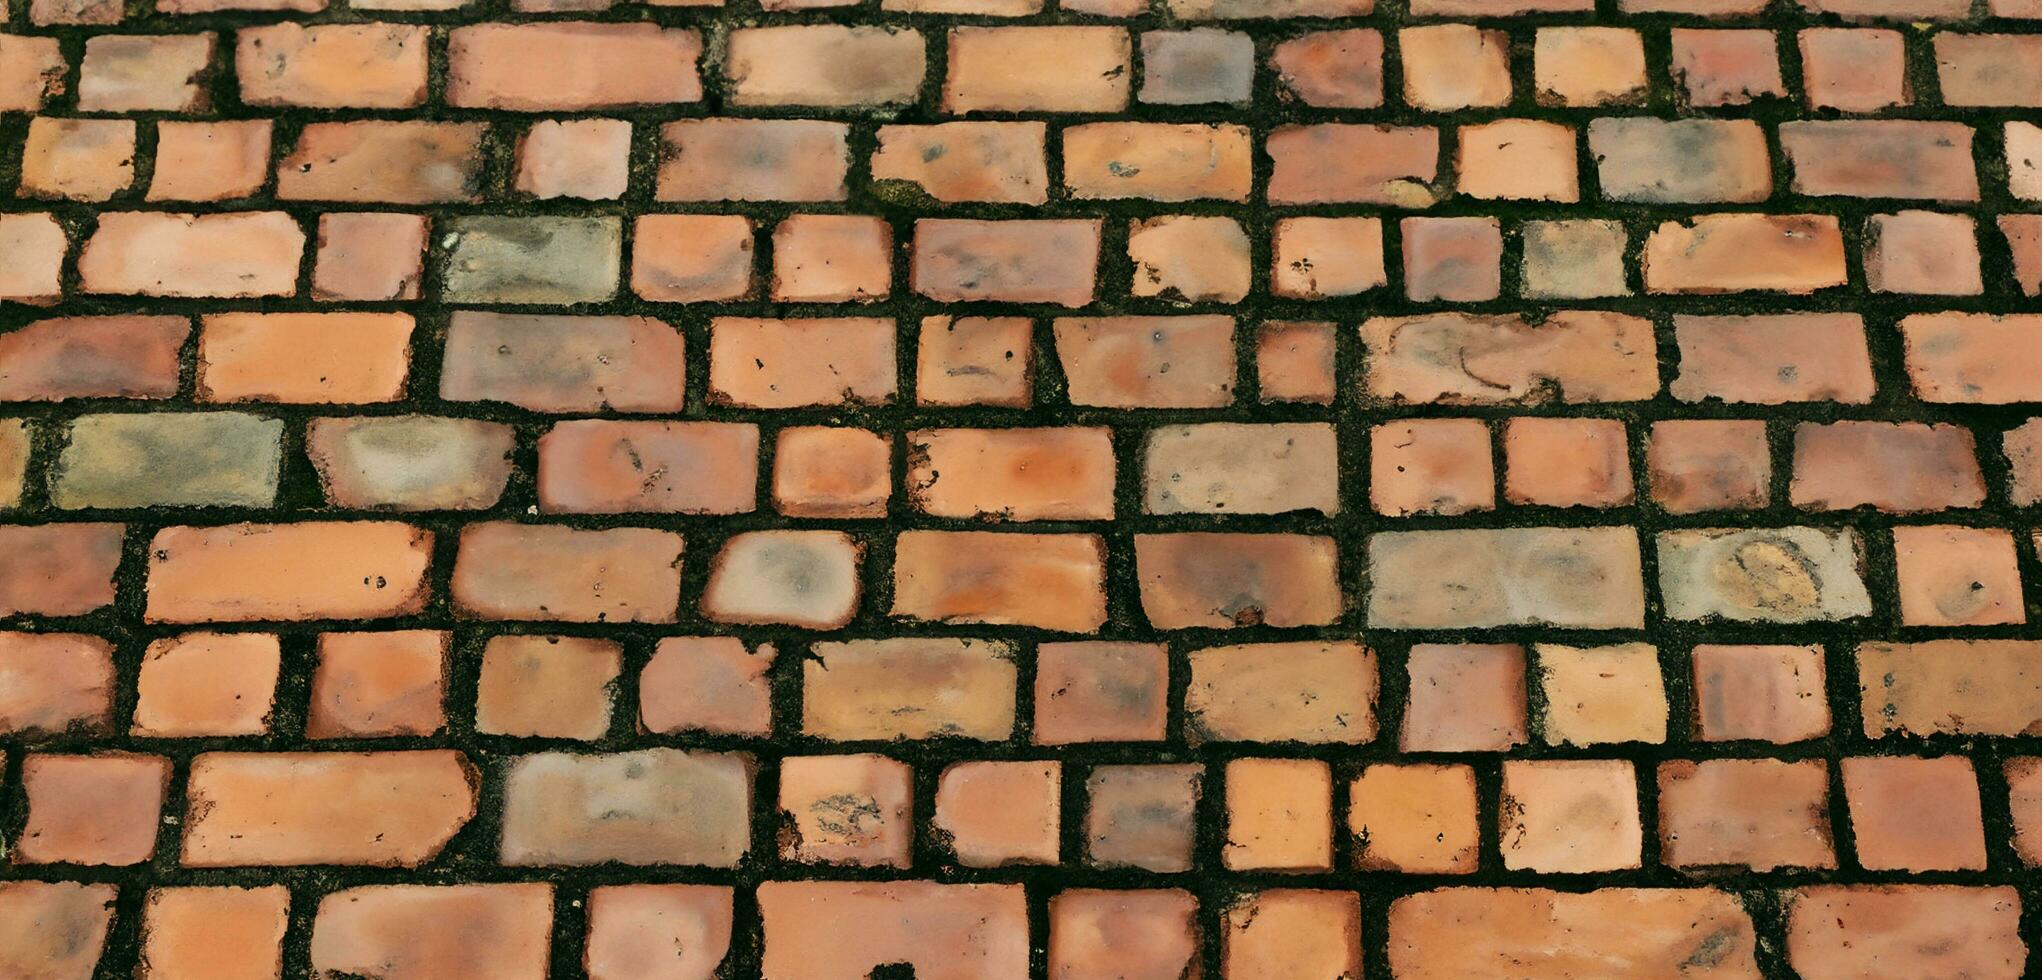 guijarro pavimento cerca arriba de el detalle adoquines en un antiguo calle la carretera superficie hecho de marrón rectangular piedras.viejas la carretera granito piedras 3d ilustración foto